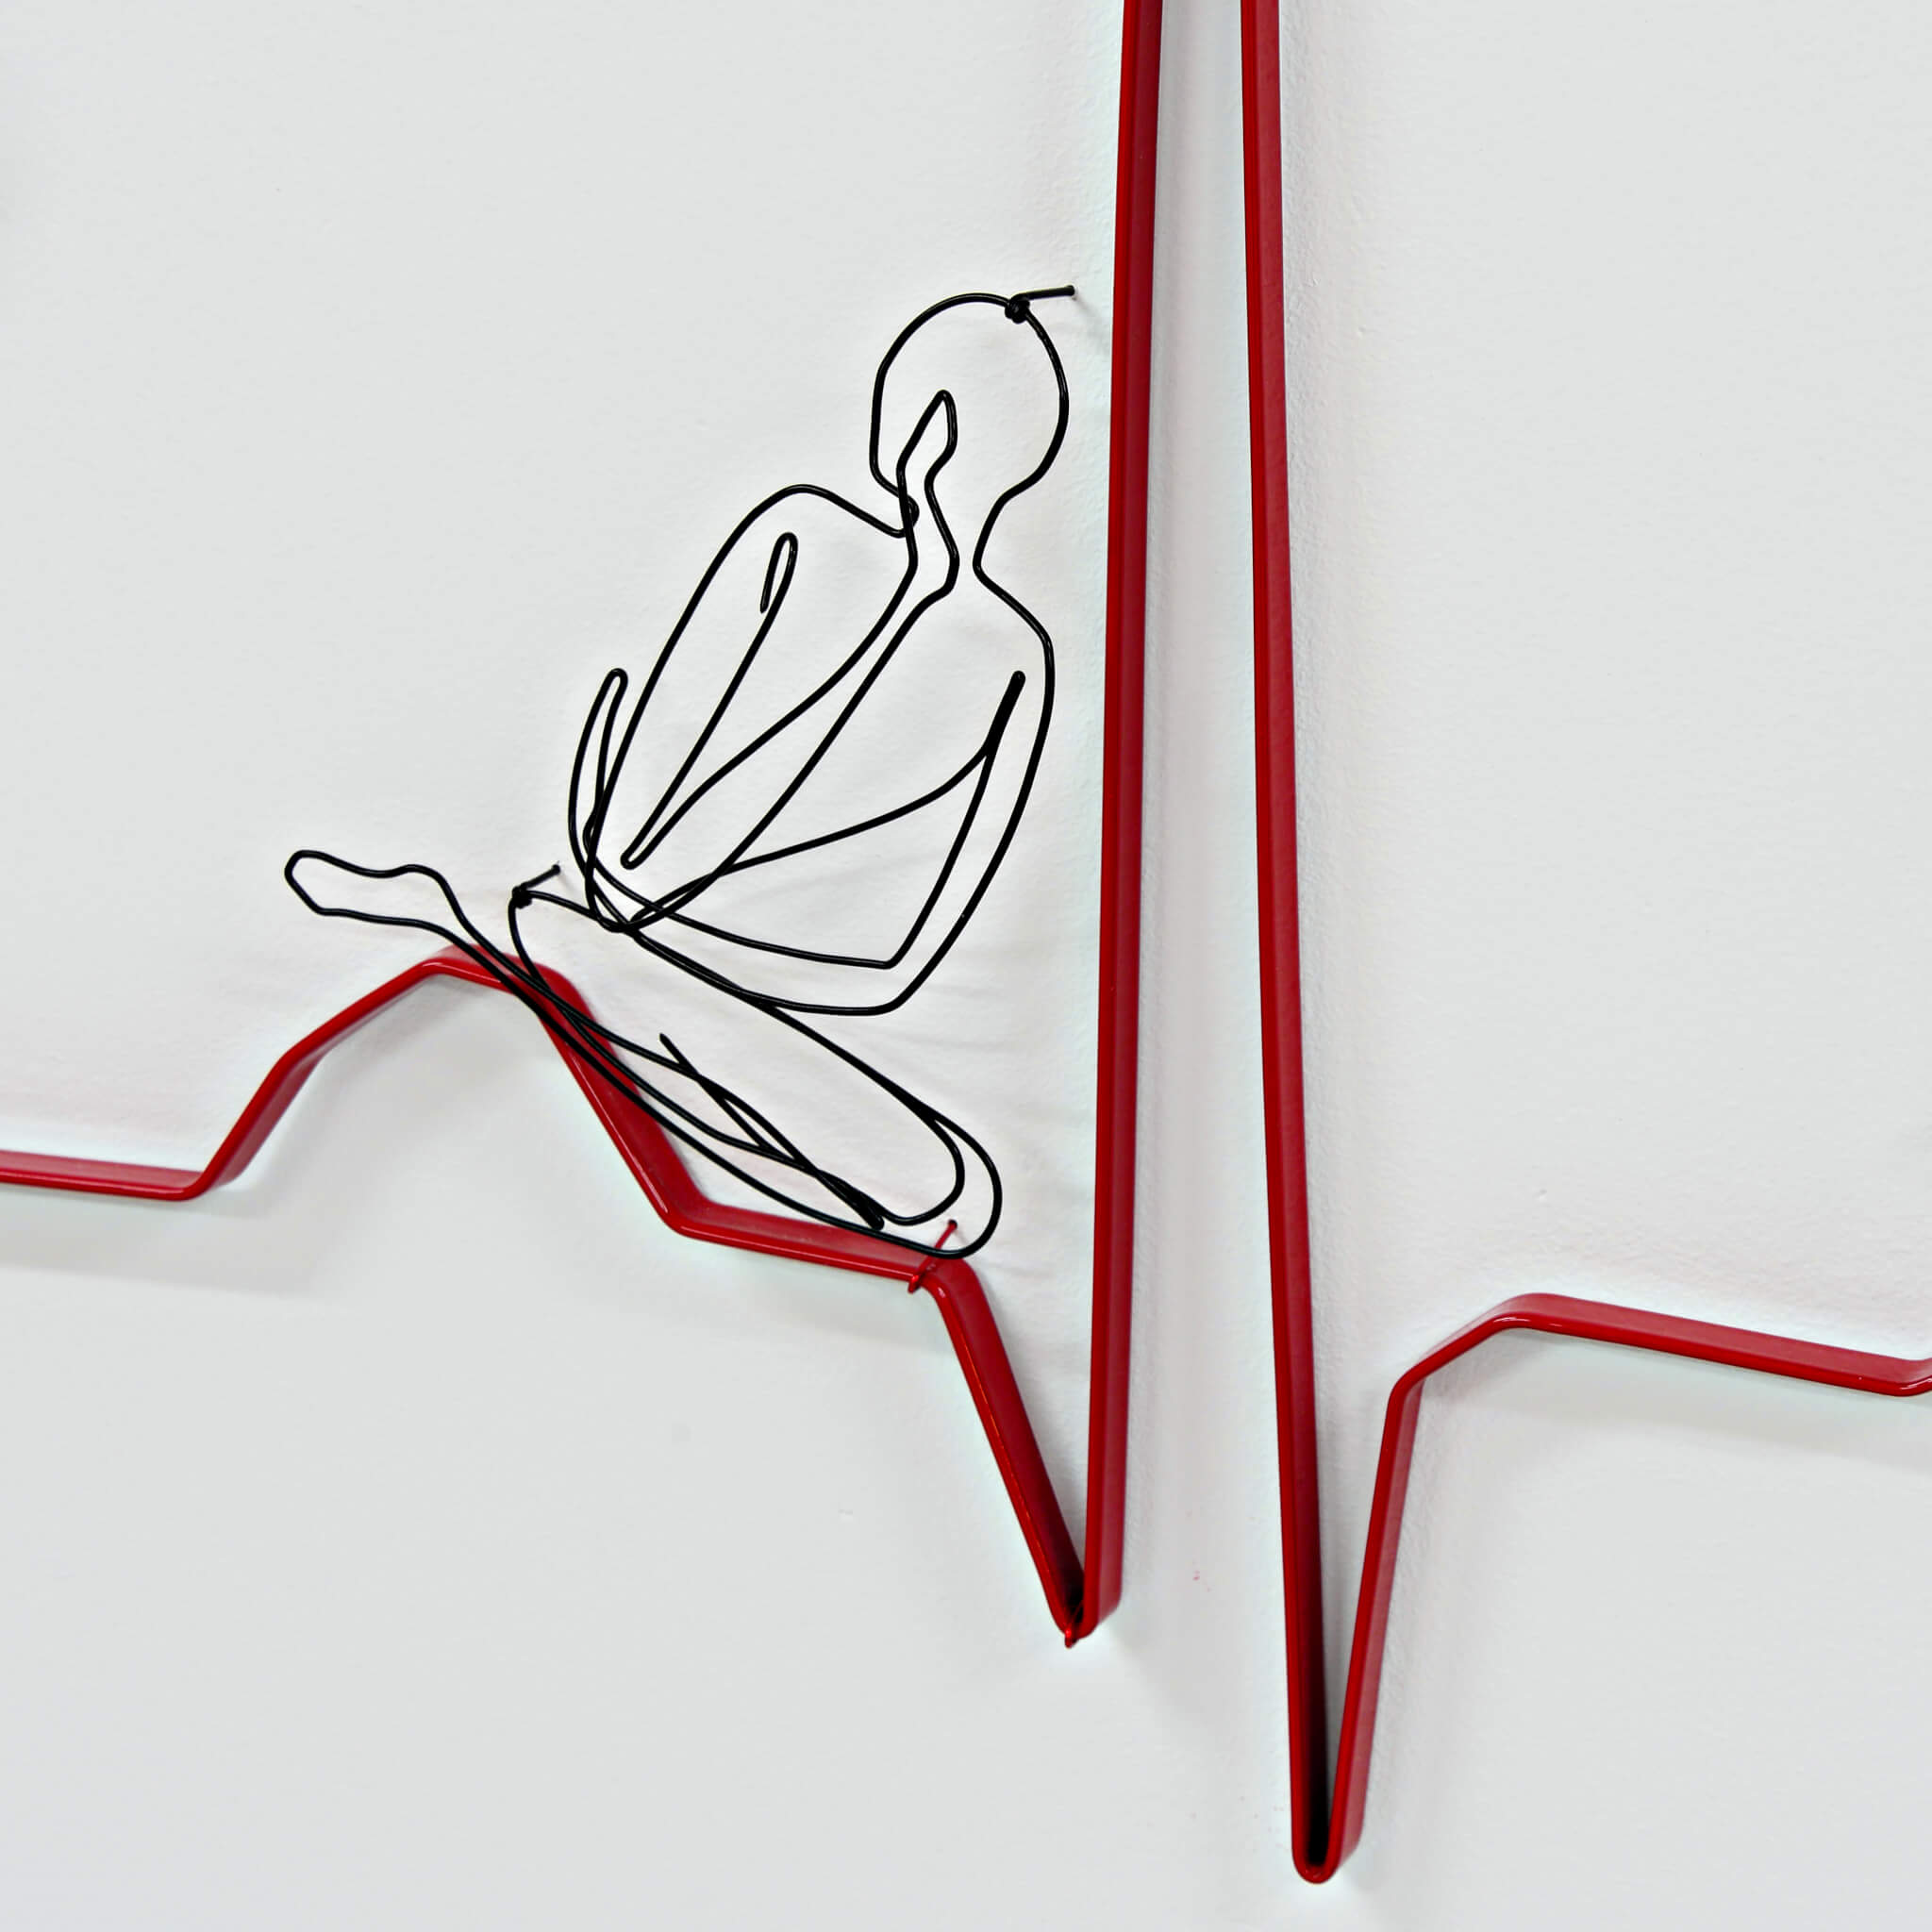 Pamela Merory Dernham sculpture, "Heart, Attack." detail 2